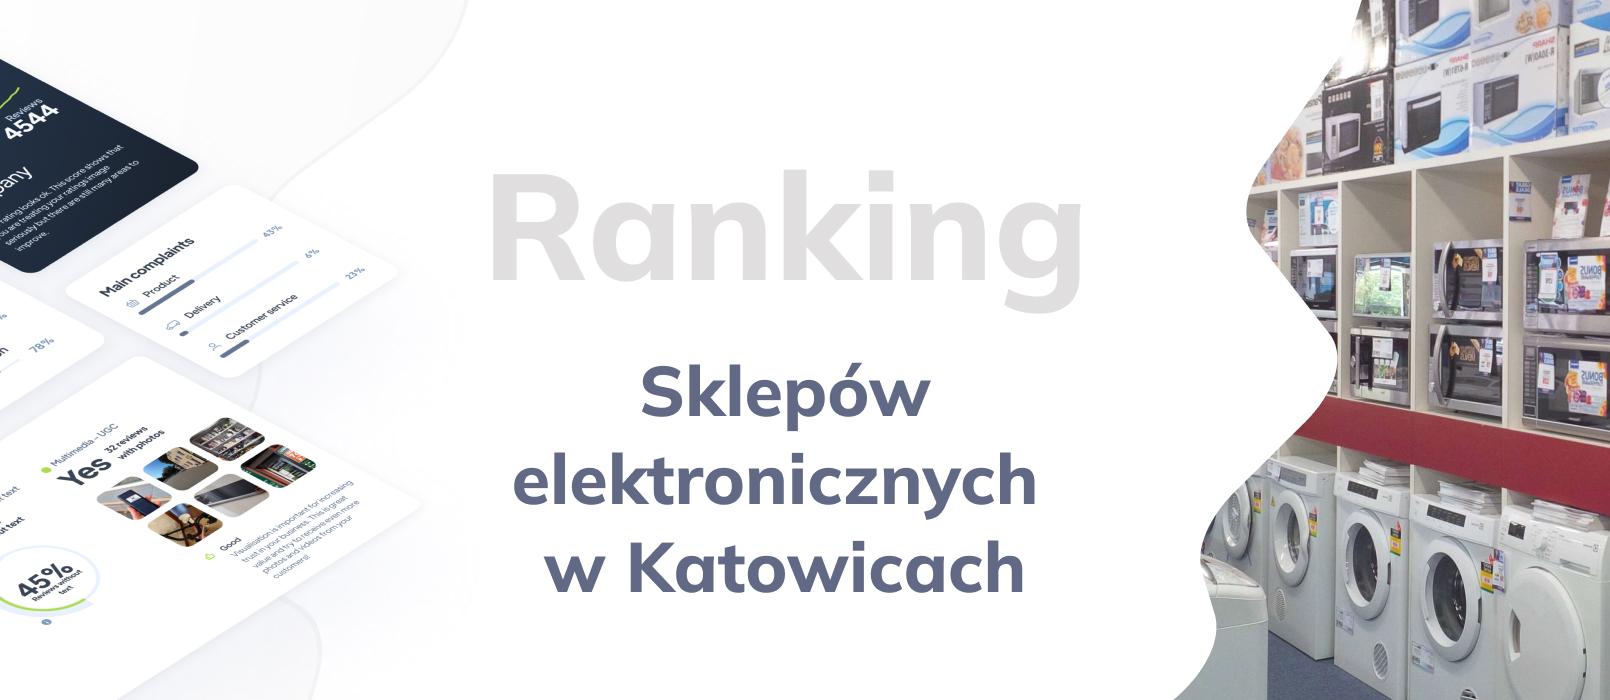 Sklepy elektroniczne w Katowicach - ranking TOP 10